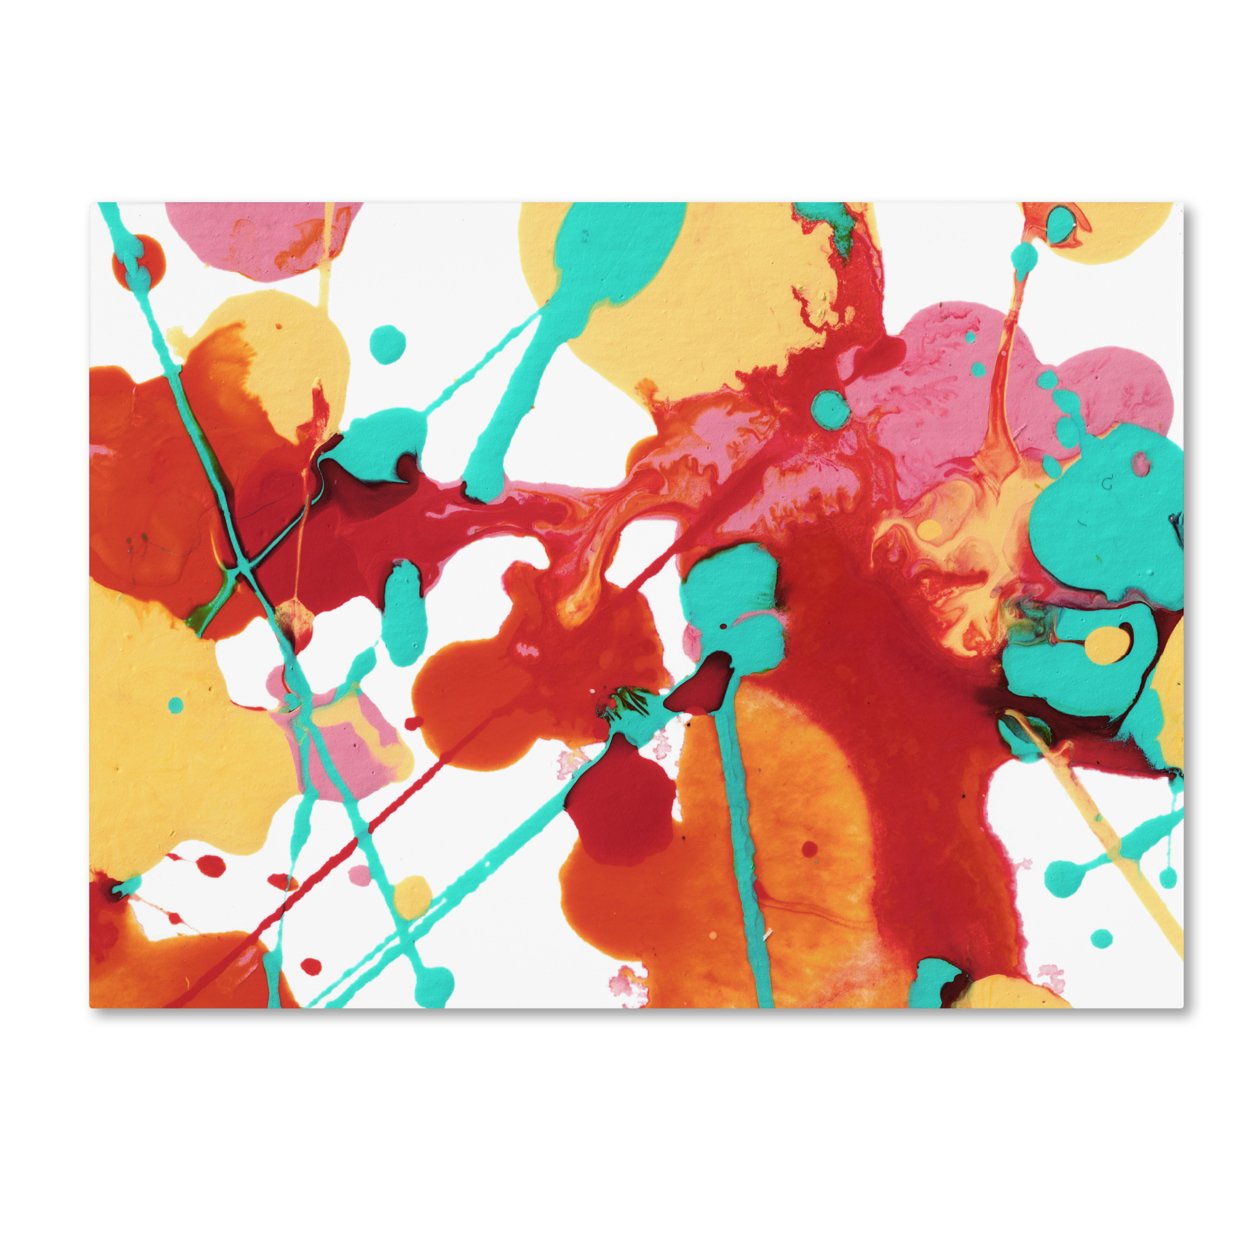 Amy Vangsgard 'Paint Party 6' Canvas Art 18 X 24